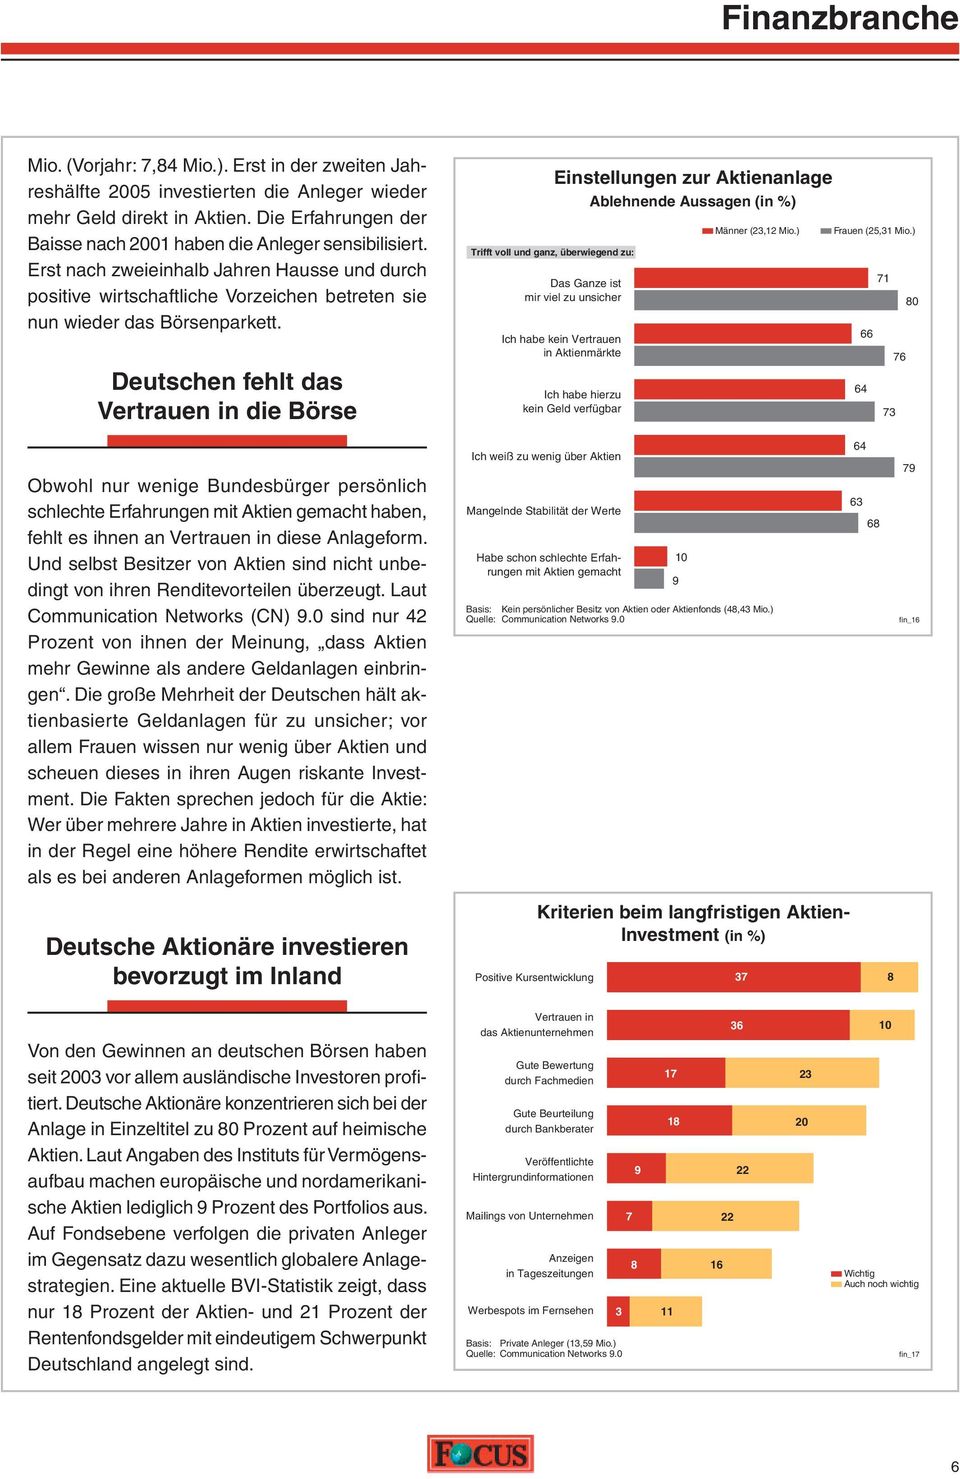 Deutschen fehlt das Vertrauen in die Börse Trifft voll und ganz, überwiegend zu: Einstellungen zur Aktienanlage Ablehnende Aussagen (in %) Das Ganze ist mir viel zu unsicher Ich habe kein Vertrauen